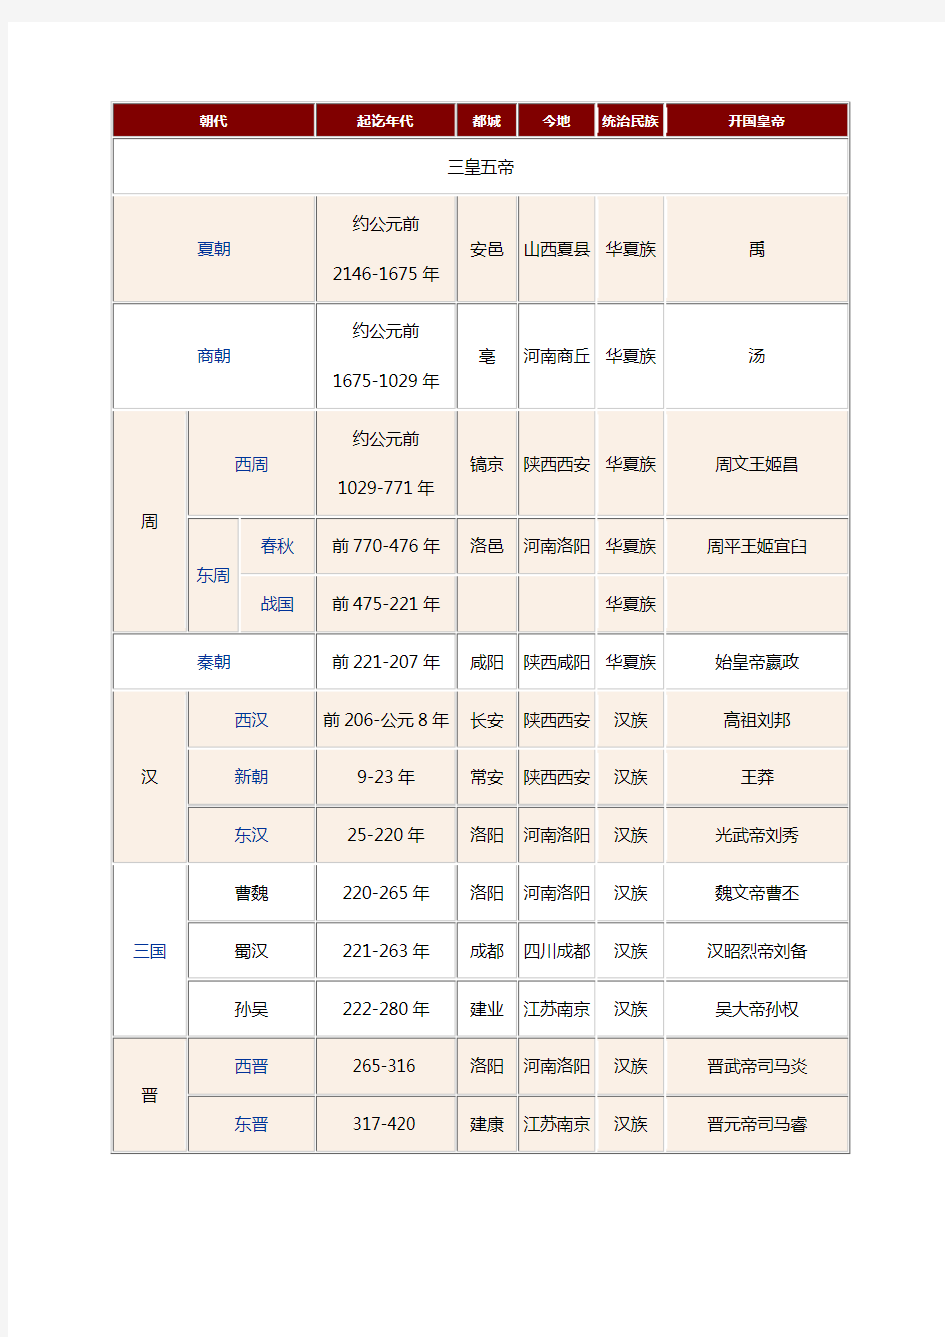 中国古代史朝代统计表